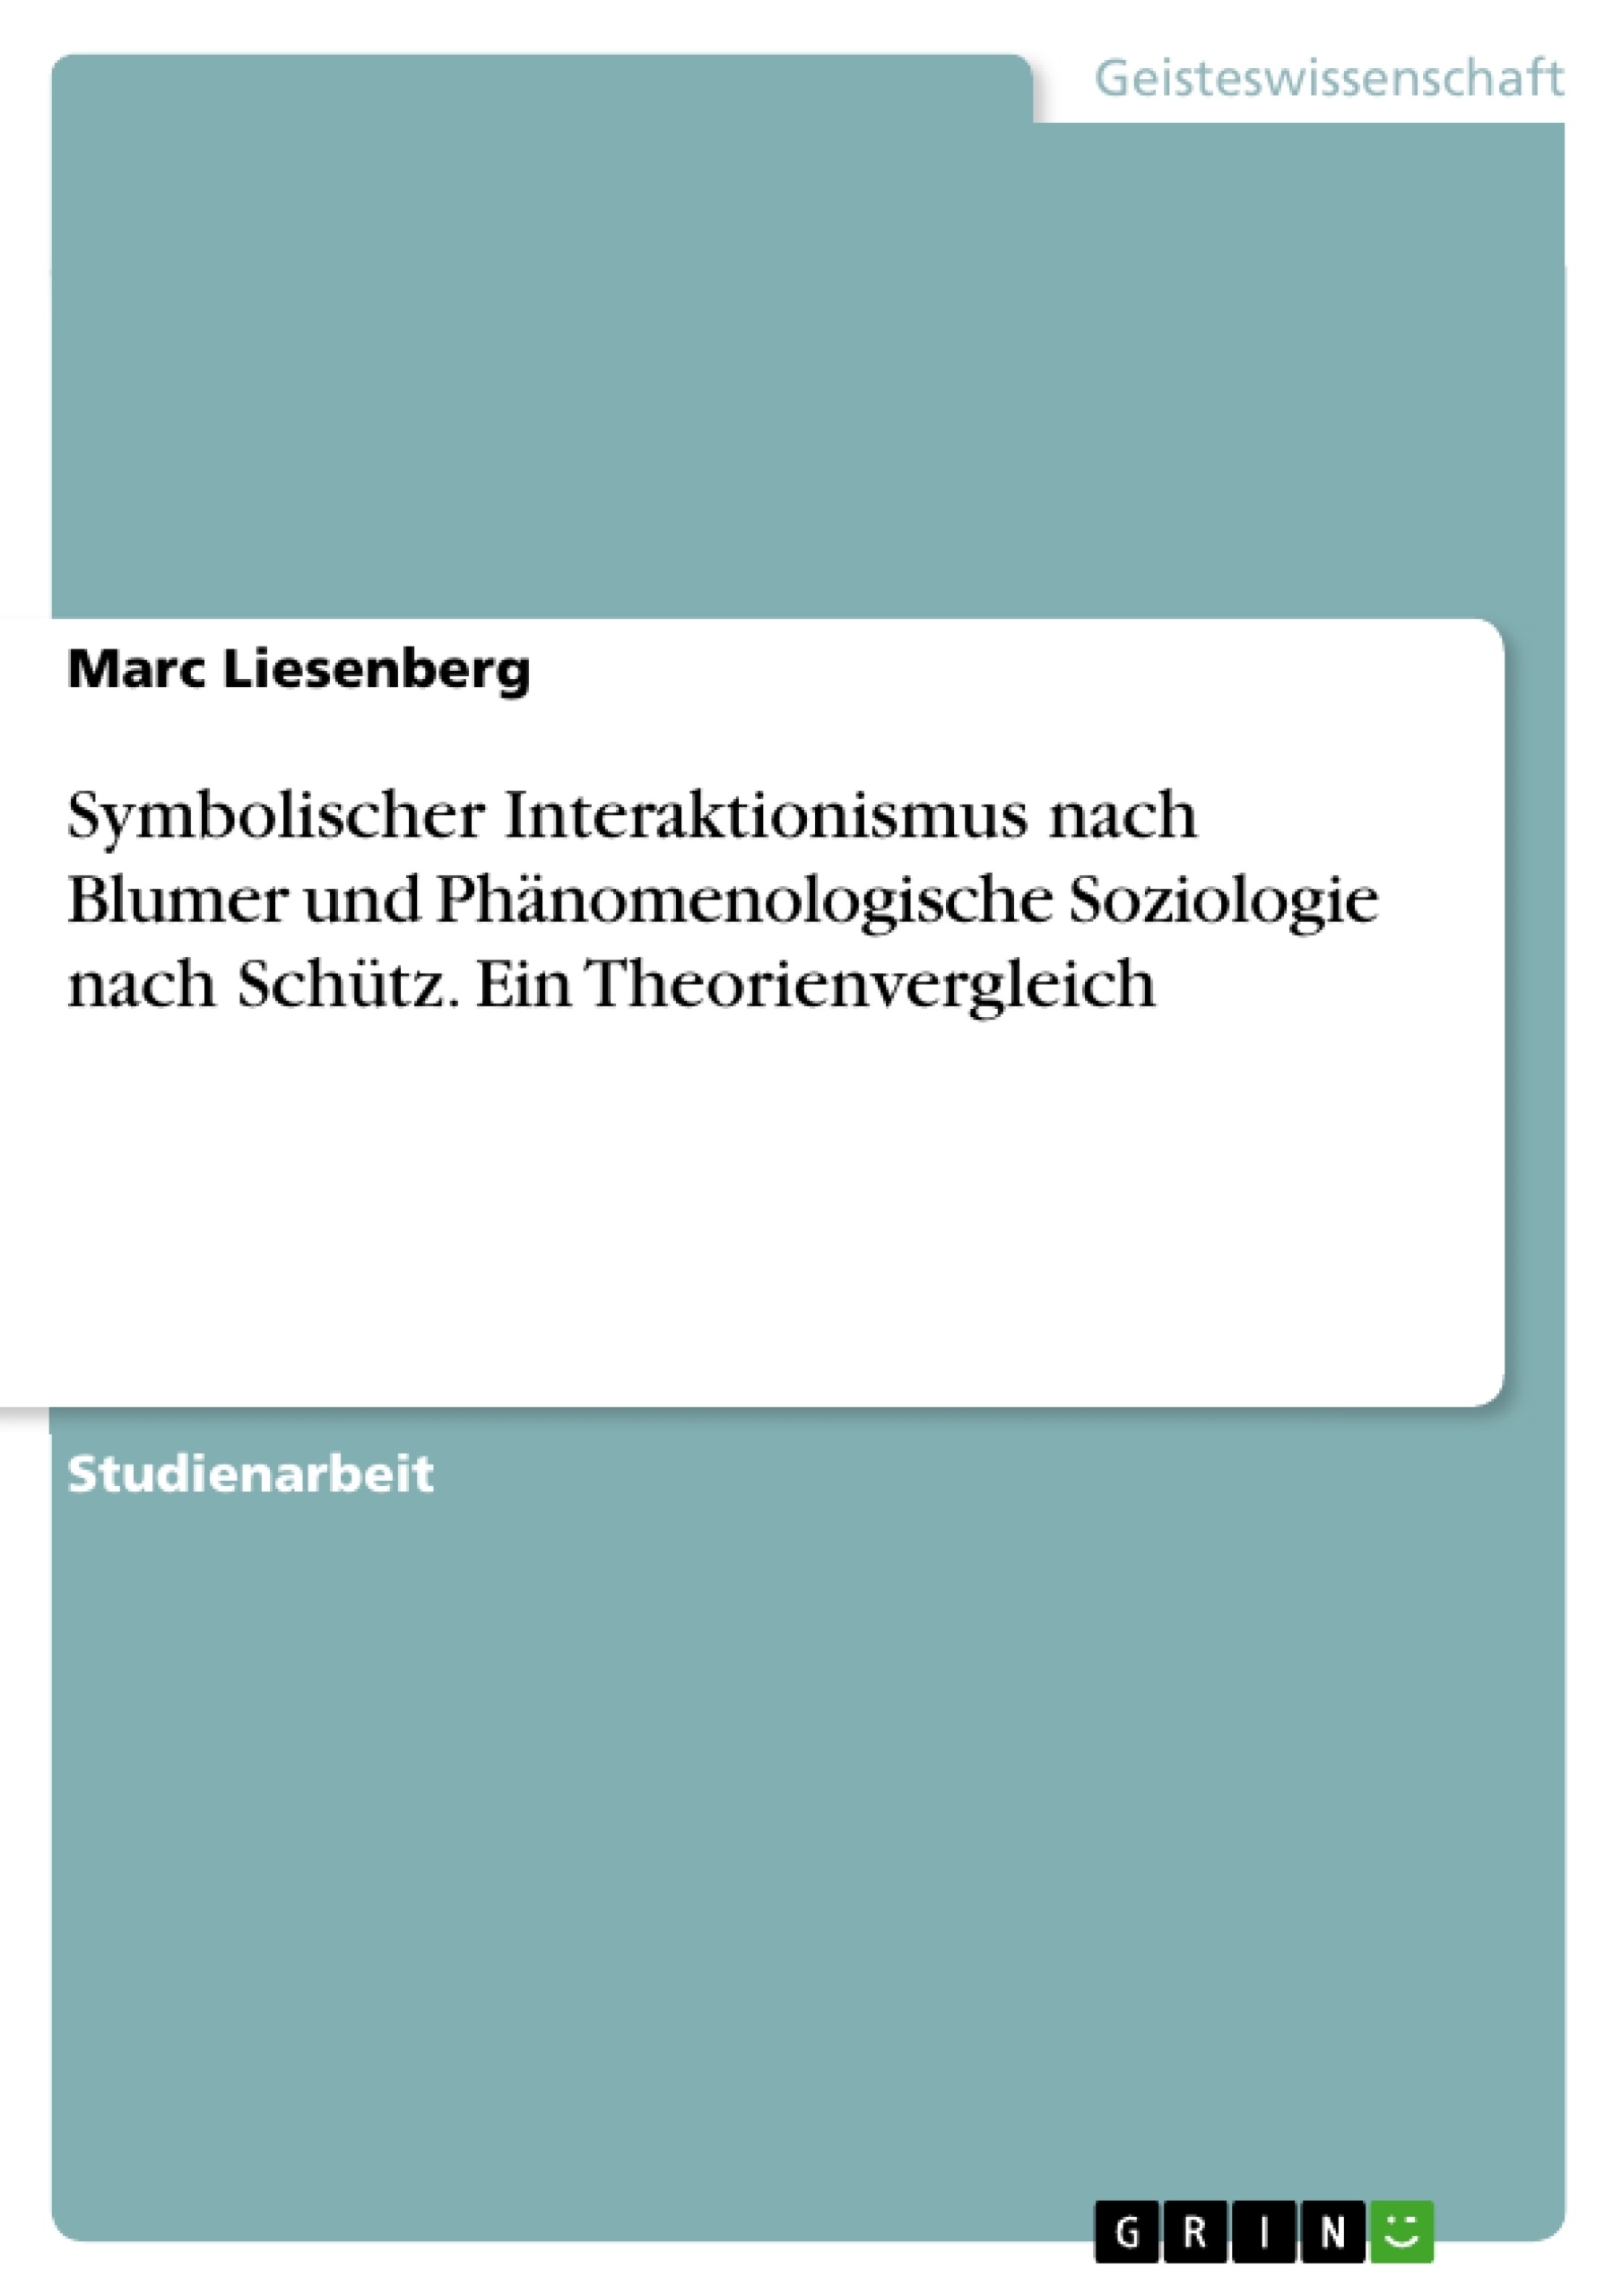 Title: Symbolischer Interaktionismus nach Blumer und Phänomenologische Soziologie nach Schütz. Ein Theorienvergleich